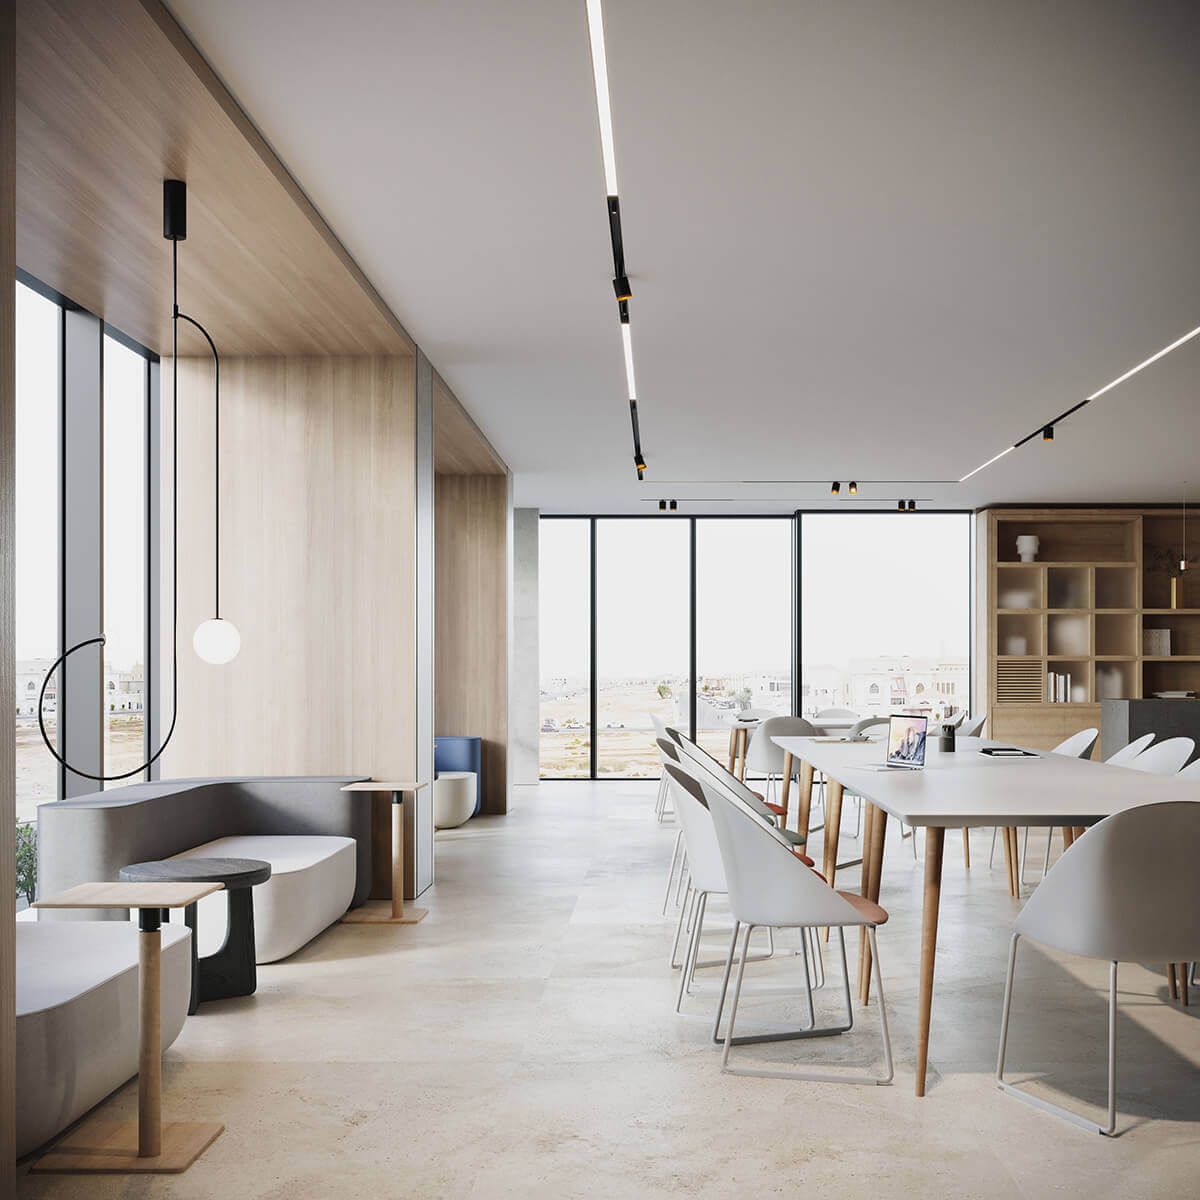 Thiết kế không gian mở trong phong cách thiết kế nội thất đẹp - tối giản thúc đẩy không gian làm việc năng động, sáng tạo | Nguồn Internet.